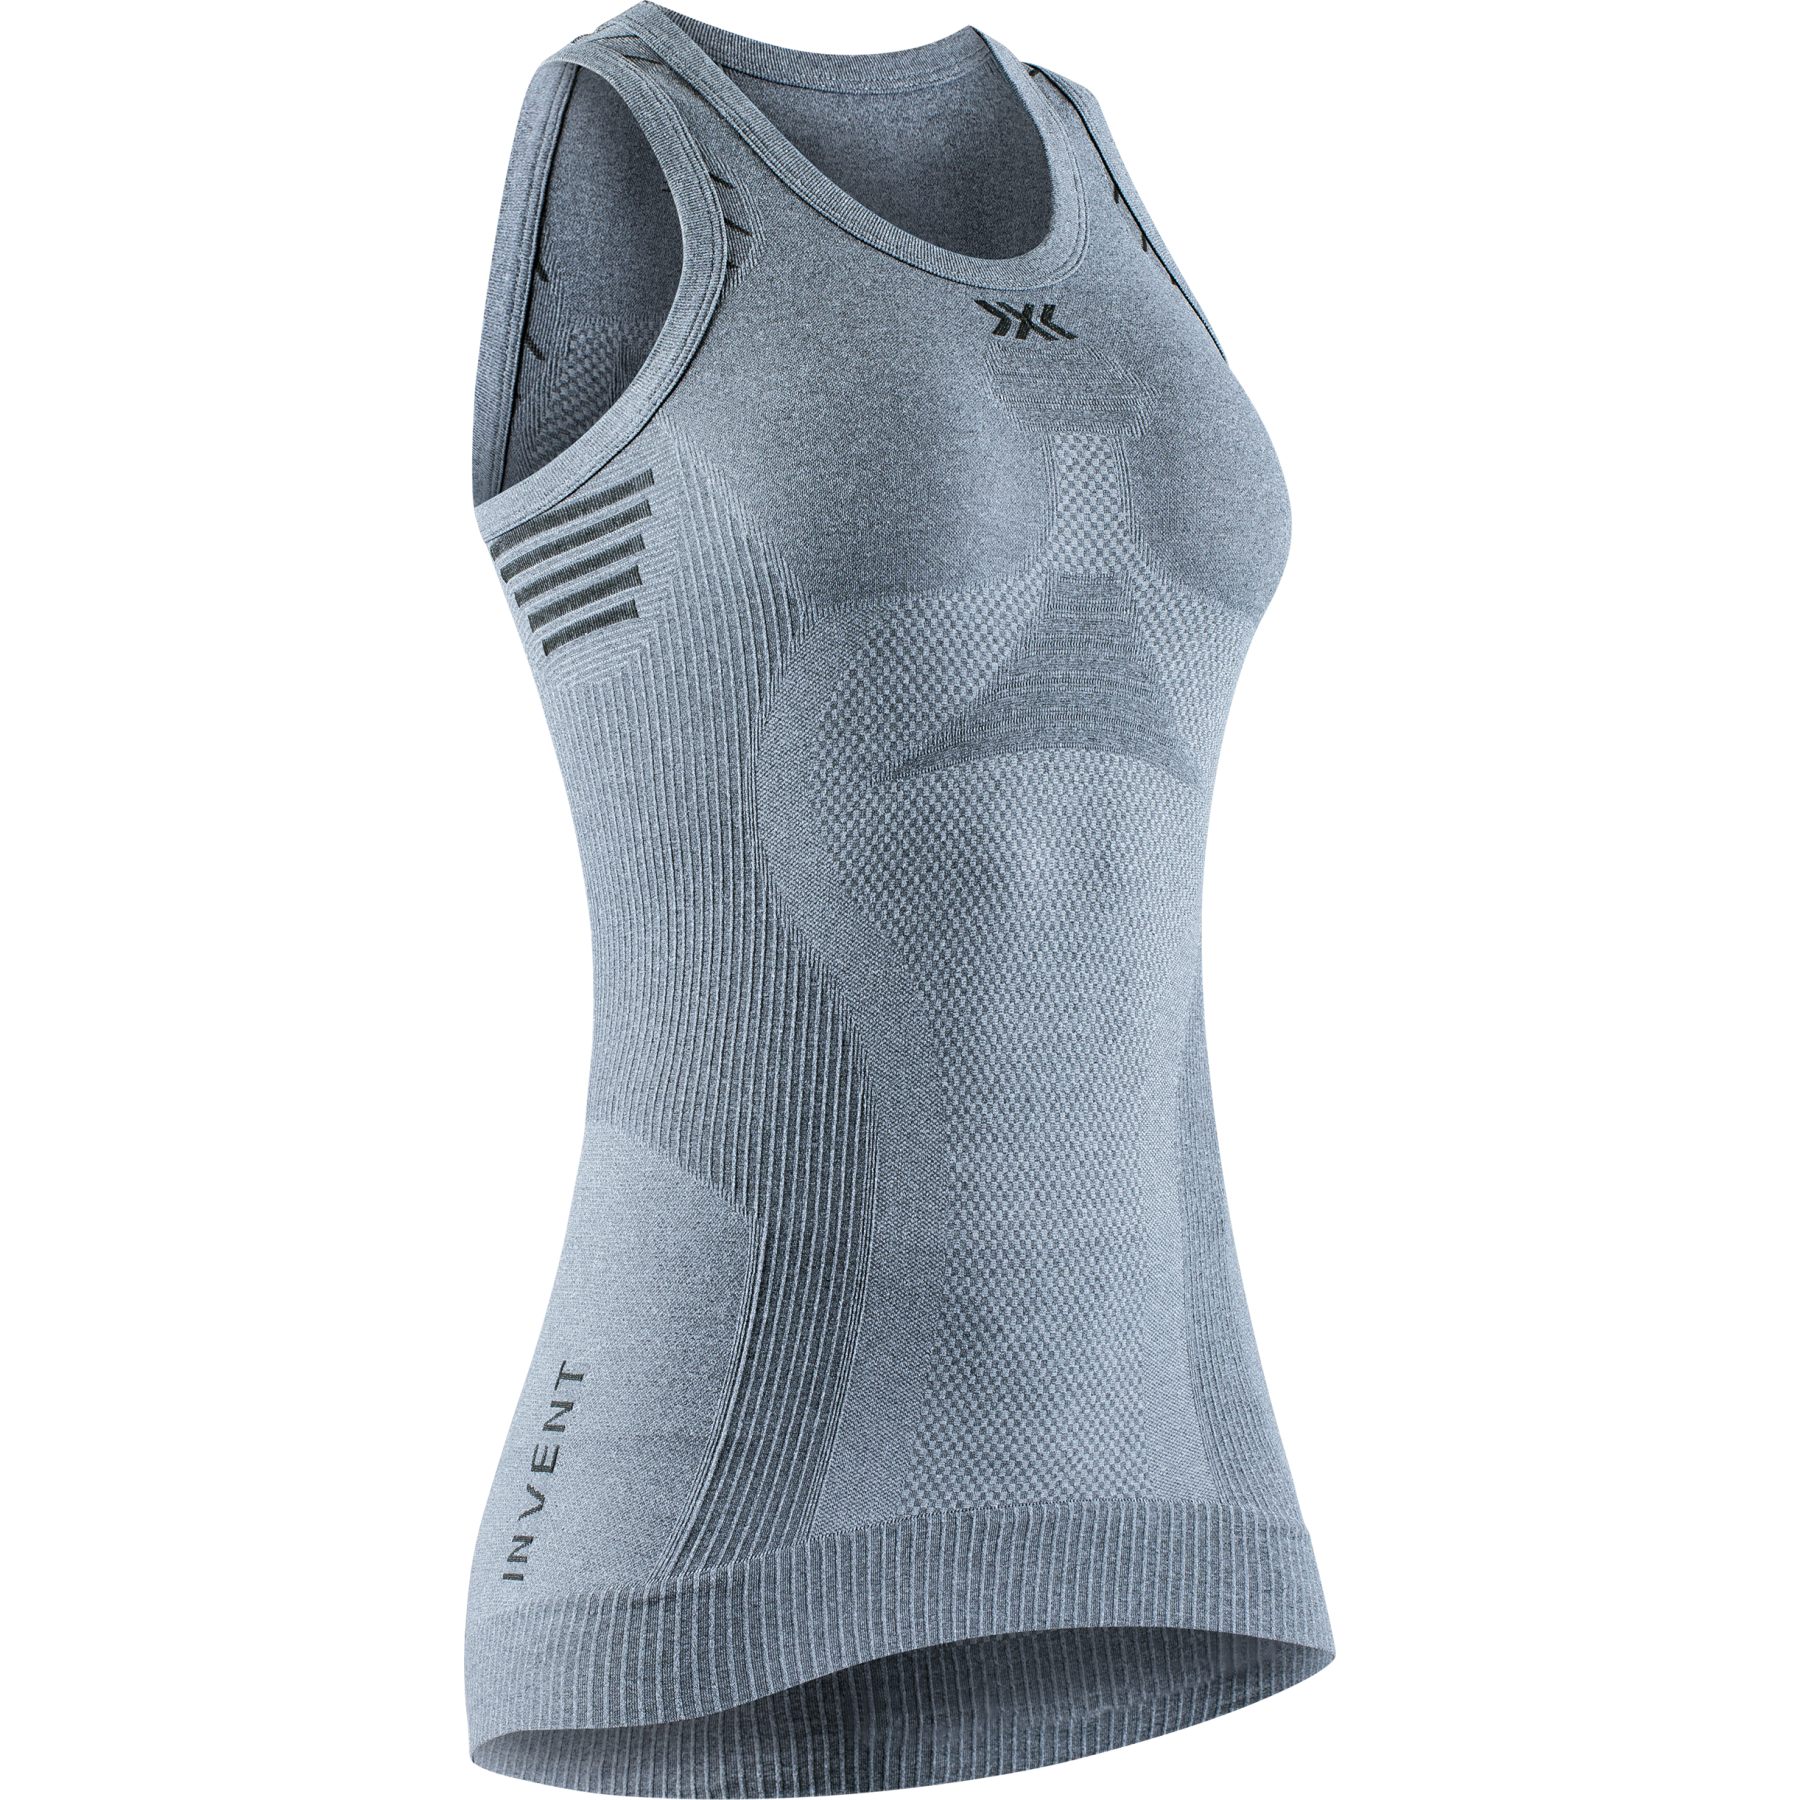 Produktbild von X-Bionic Invent 4.0 LT Singlet Unterhemd für Damen - grey melange/anthracite